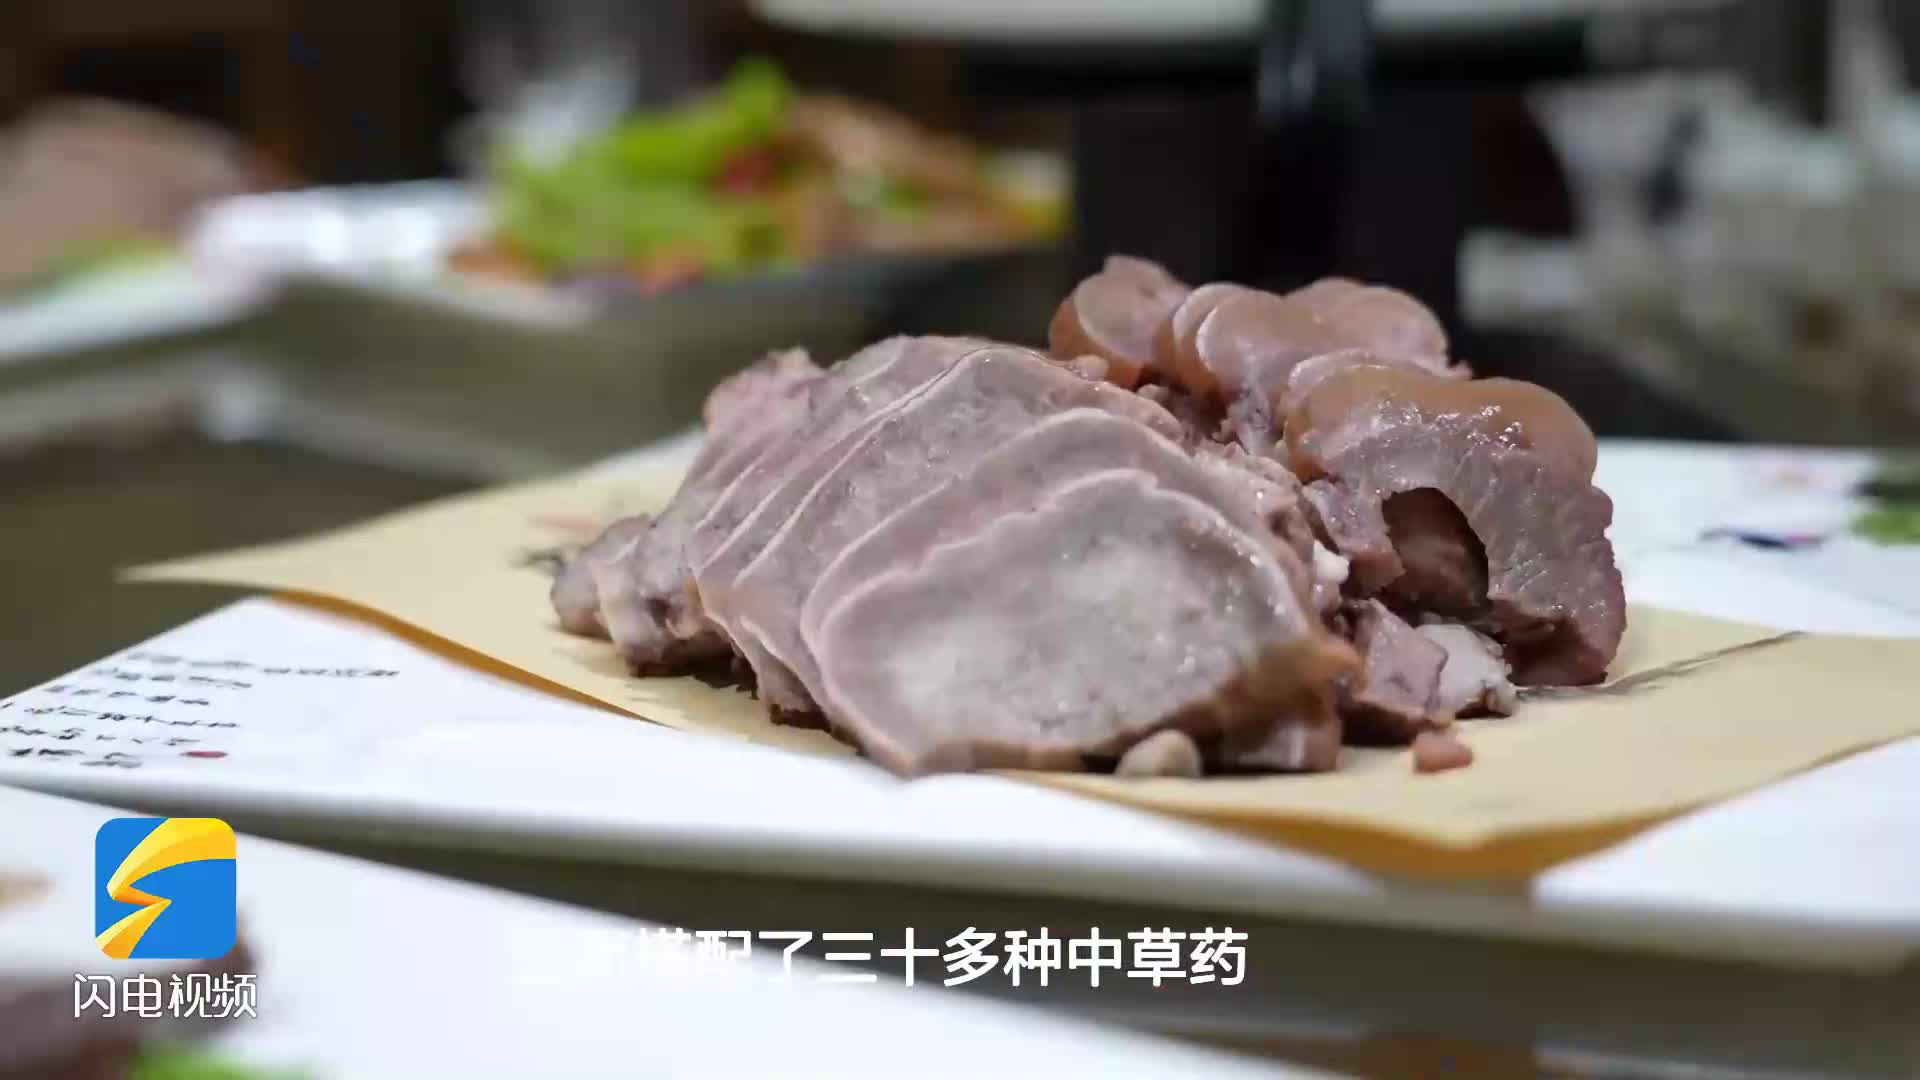 春节特色美食丨品百年历史魏集驴肉 吃出岁月的味道